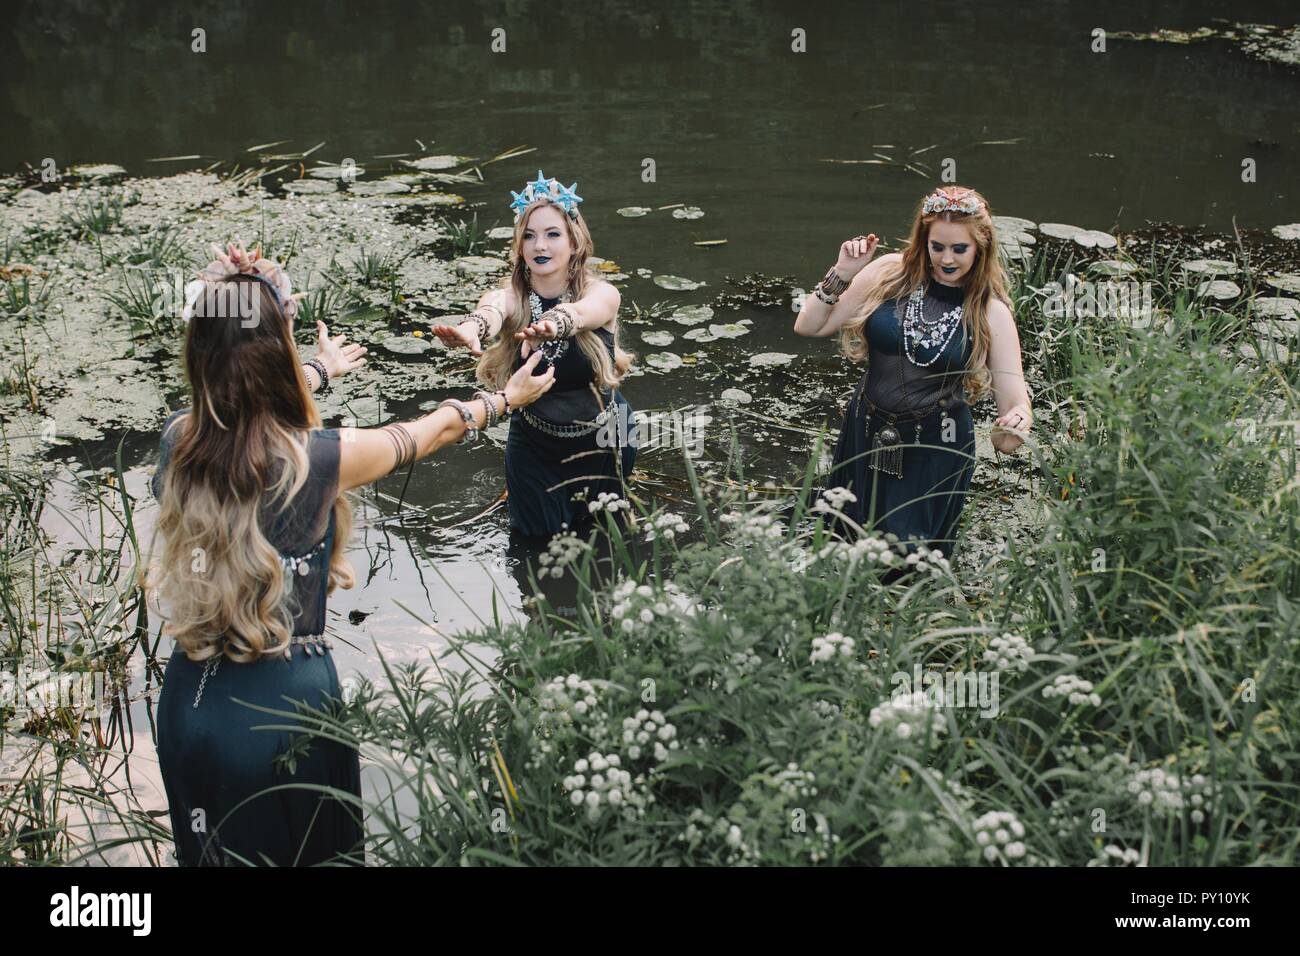 Three boho women dancing in a lake, Russia Stock Photo